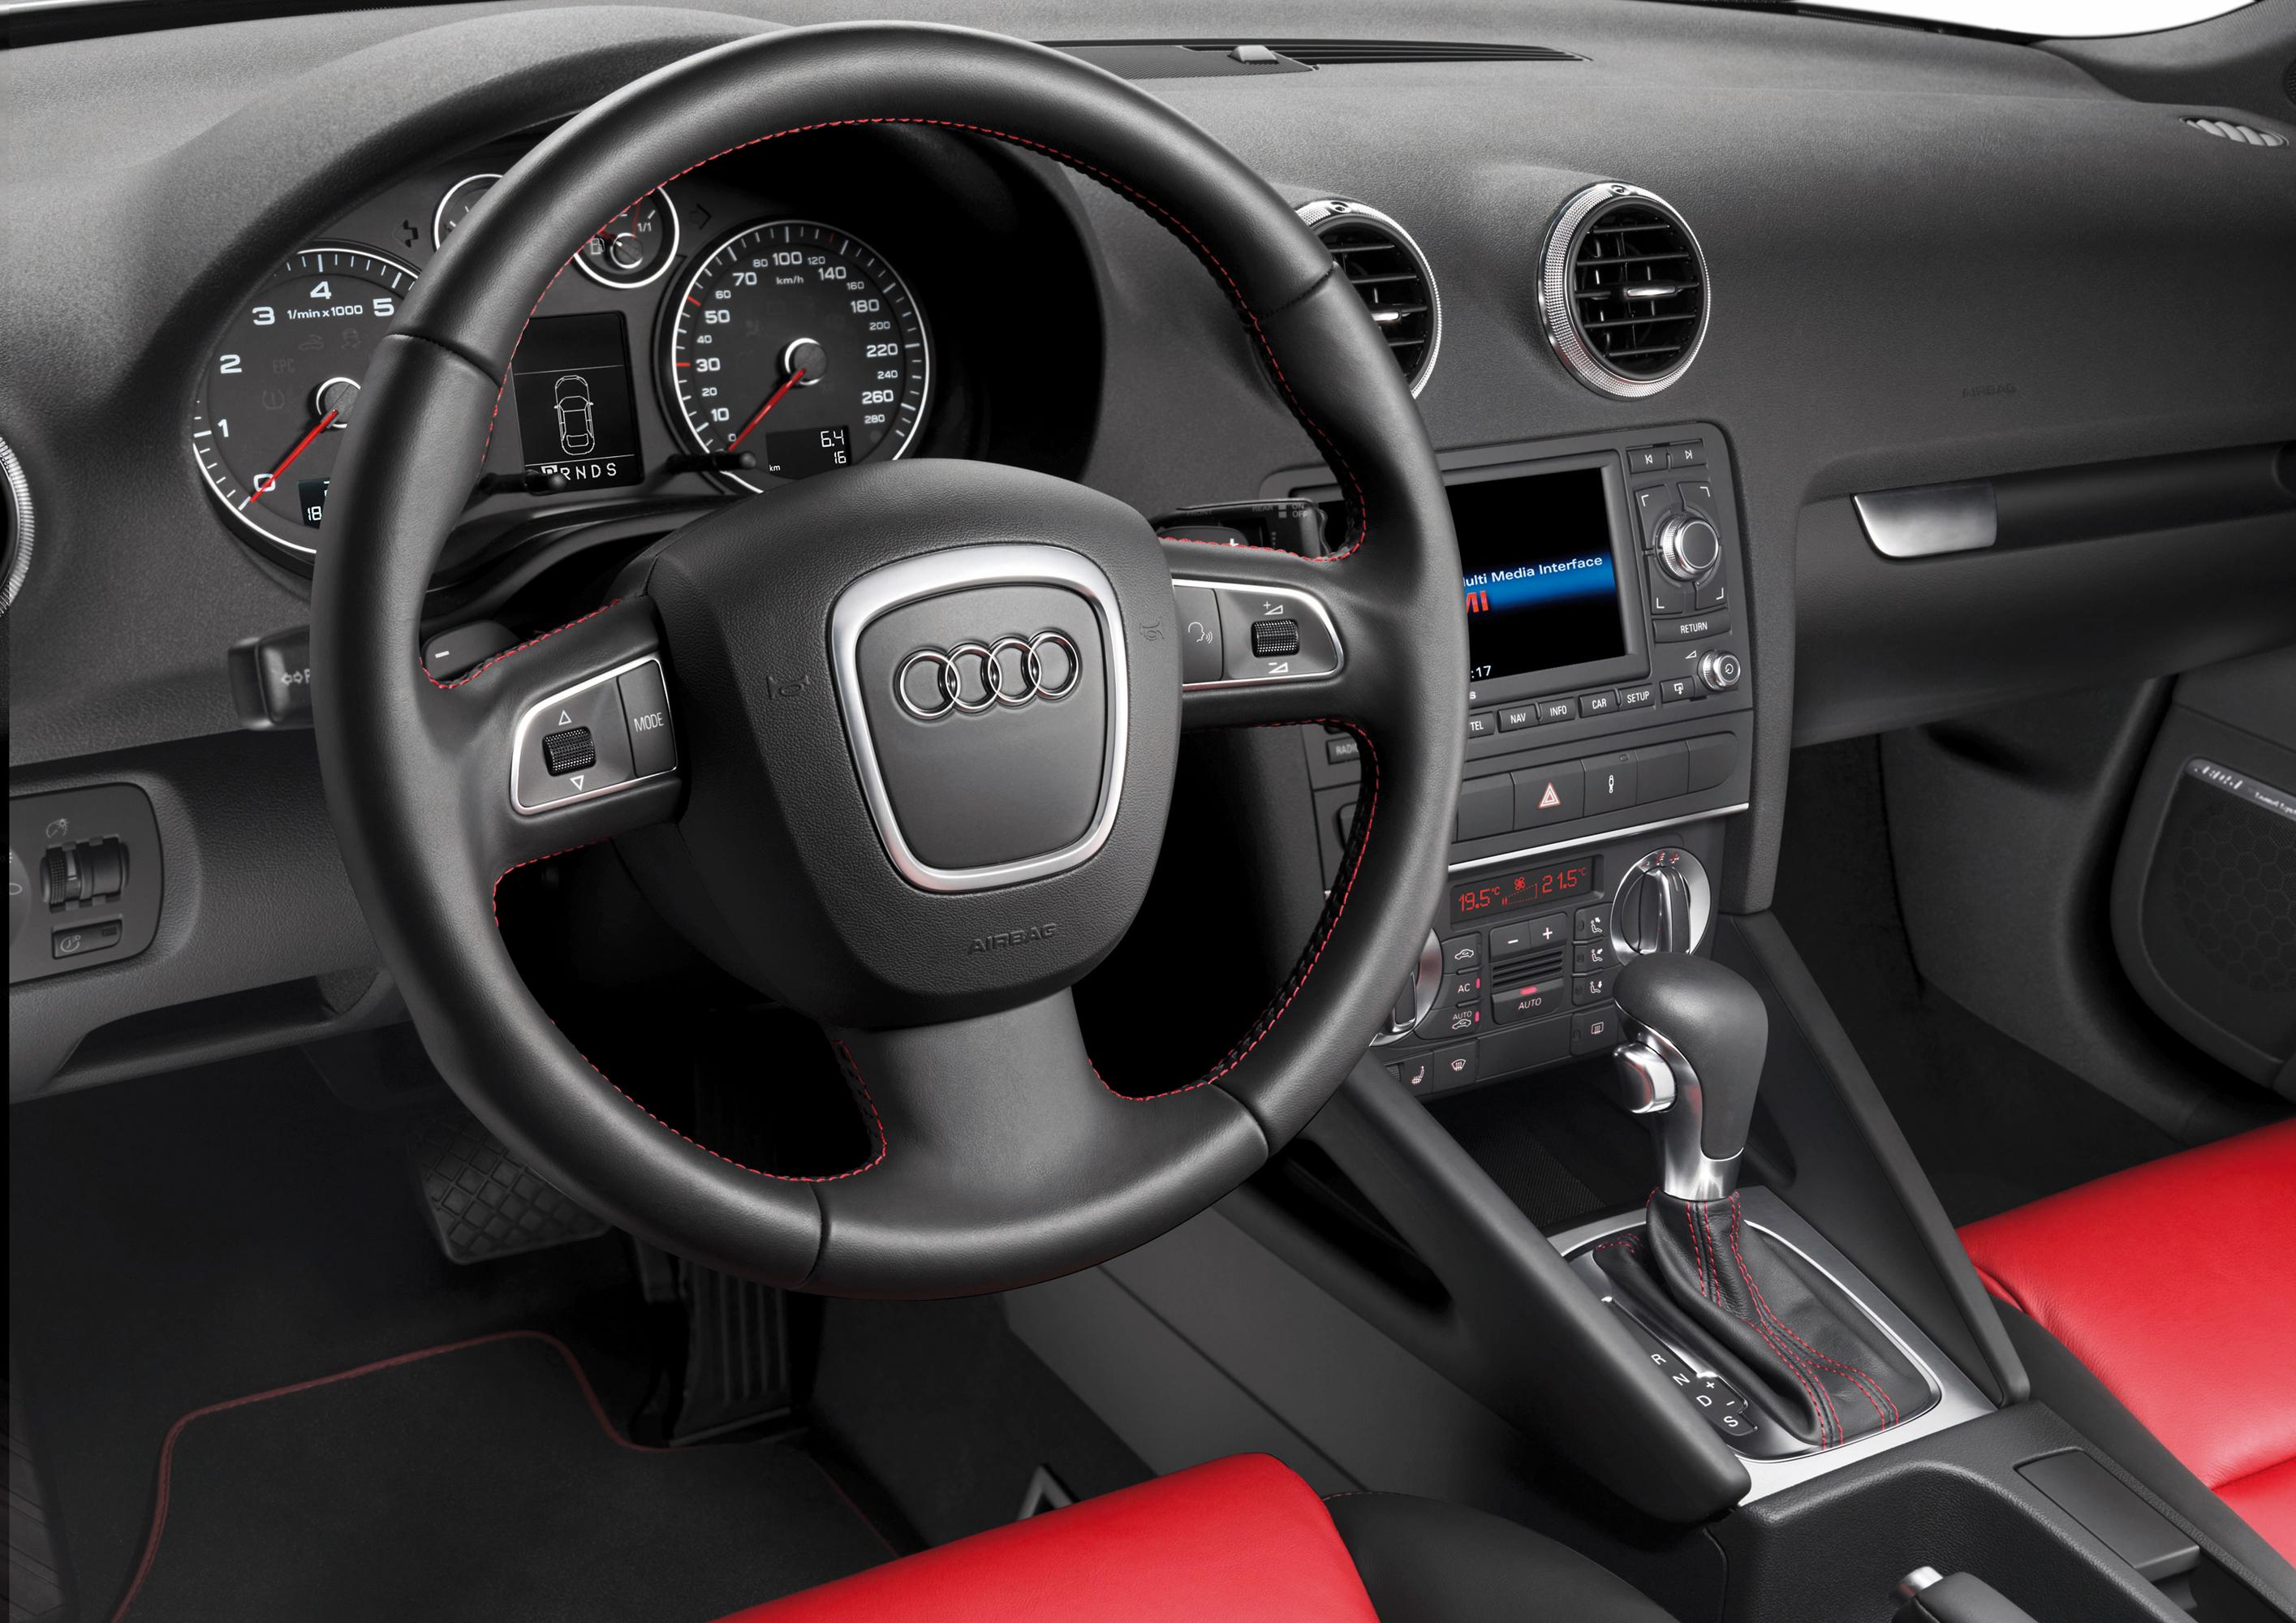 Audi A3 (Euro spec)